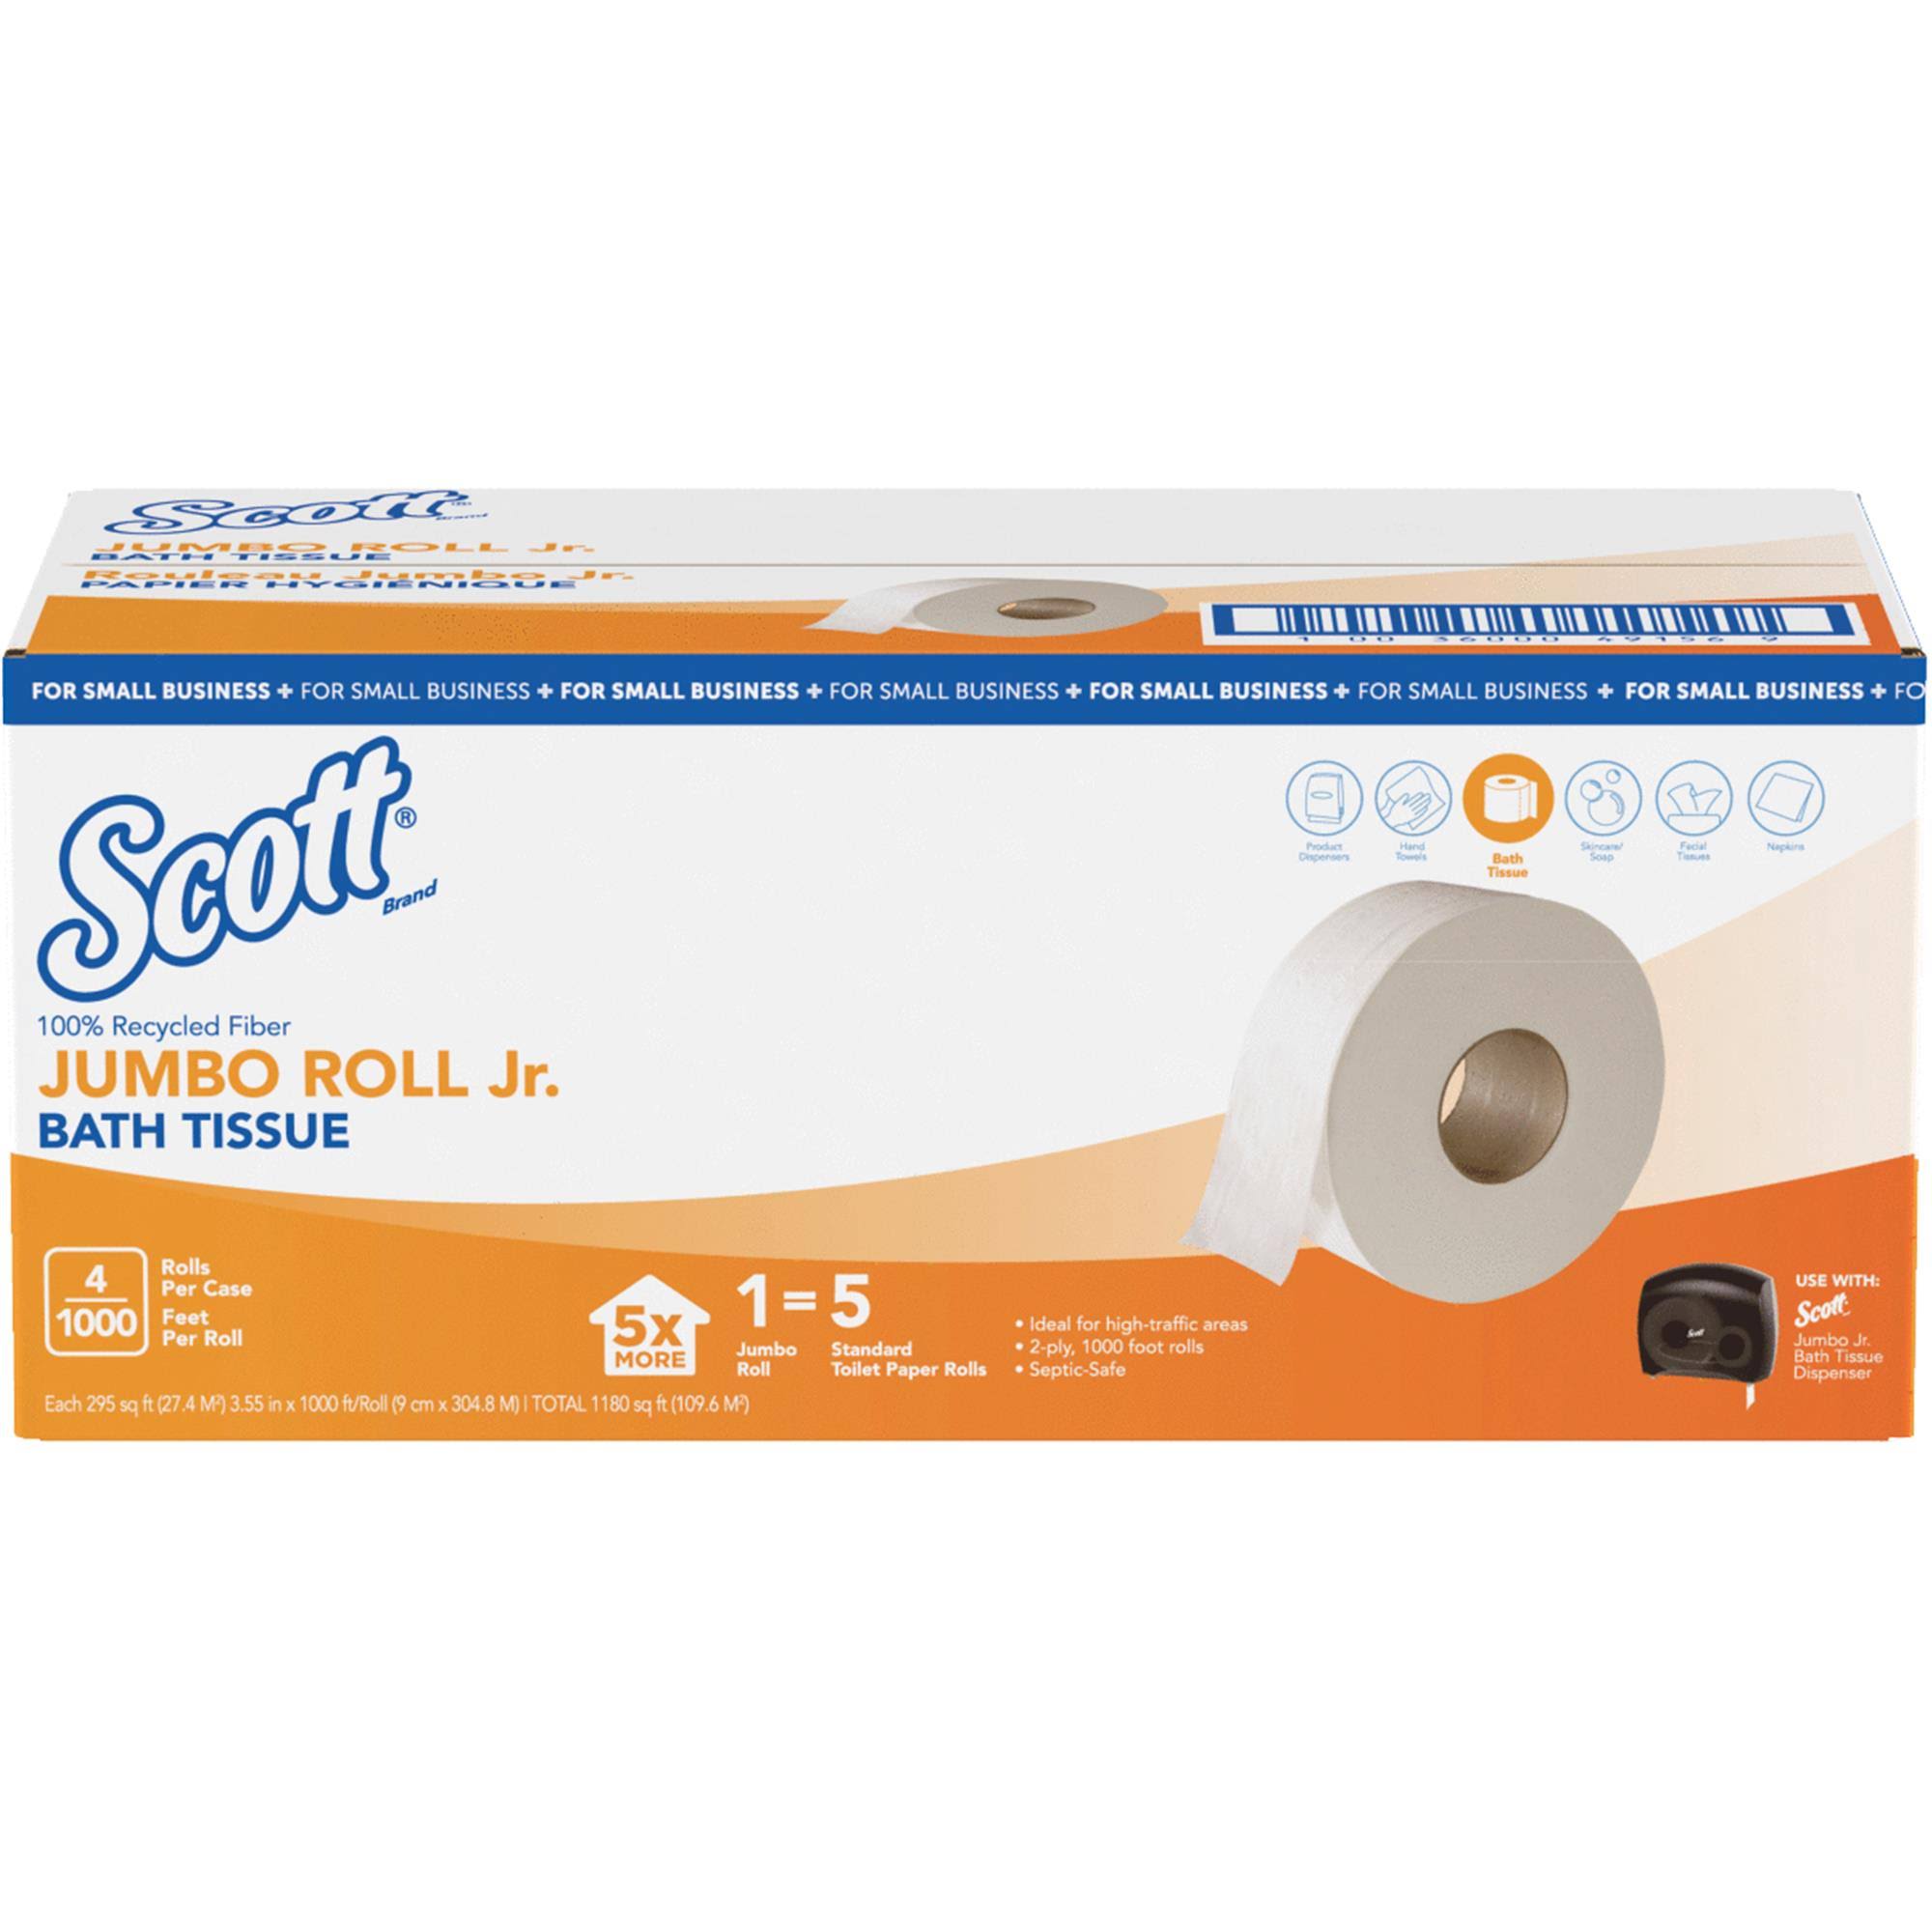 Scott Jumbo Roll Jr. Toilet Paper 4 Roll 1000 ft.